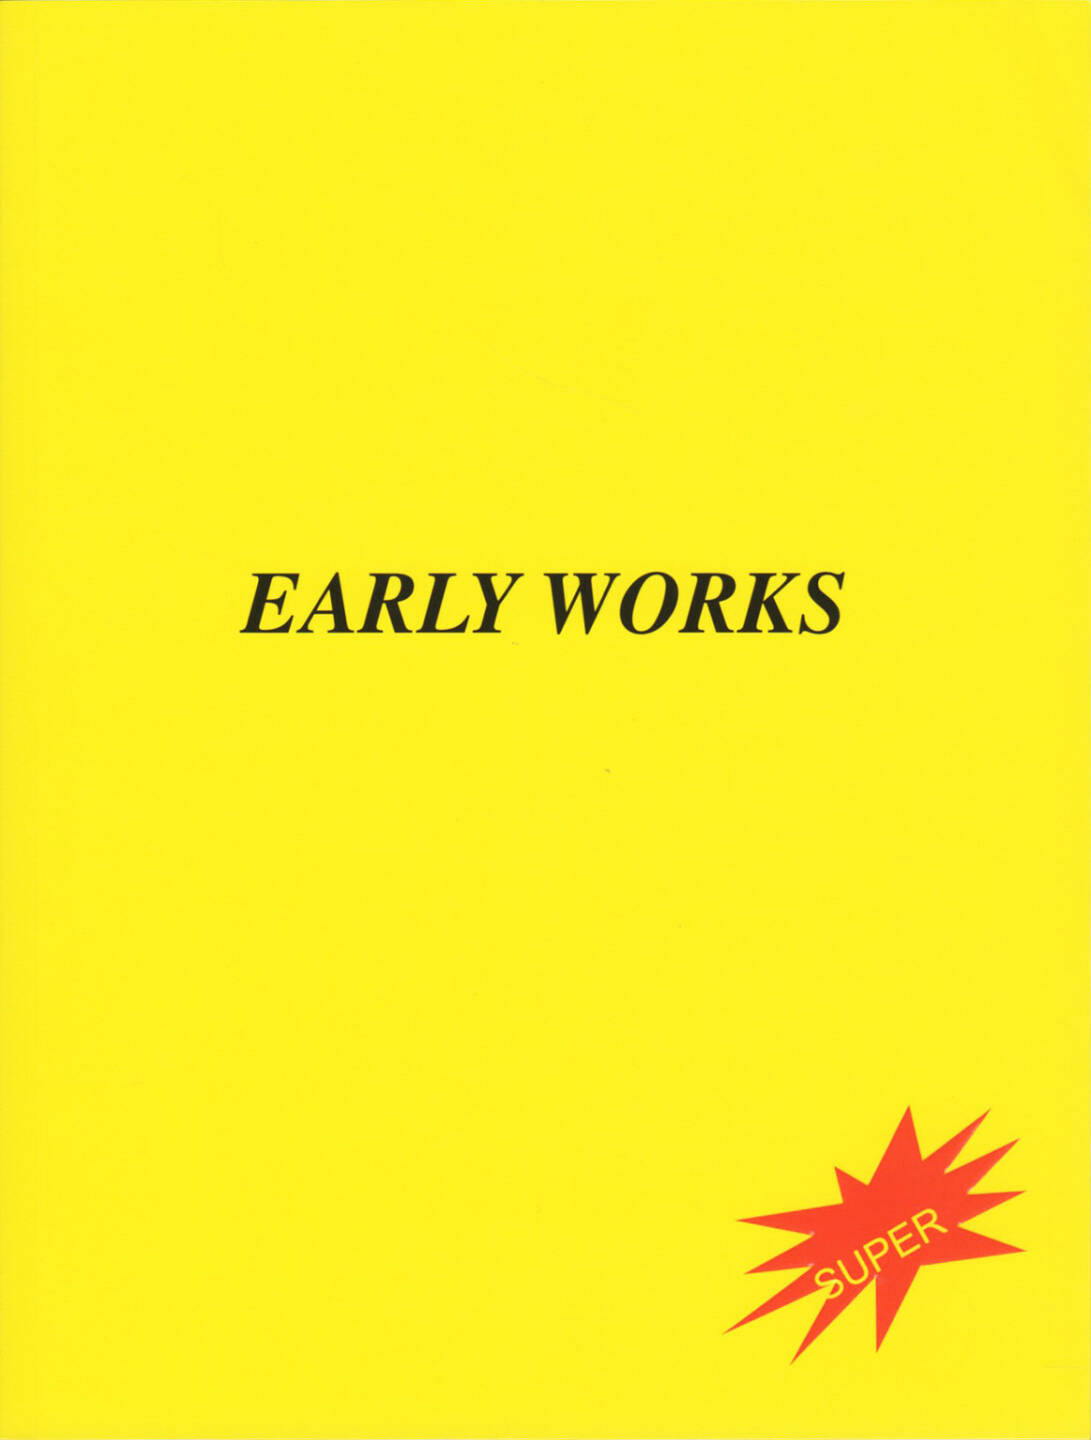 Ivars Gravlejs - Early Works, MACK Books 2015, Cover - http://josefchladek.com/book/ivars_gravlejs_-_early_works_1